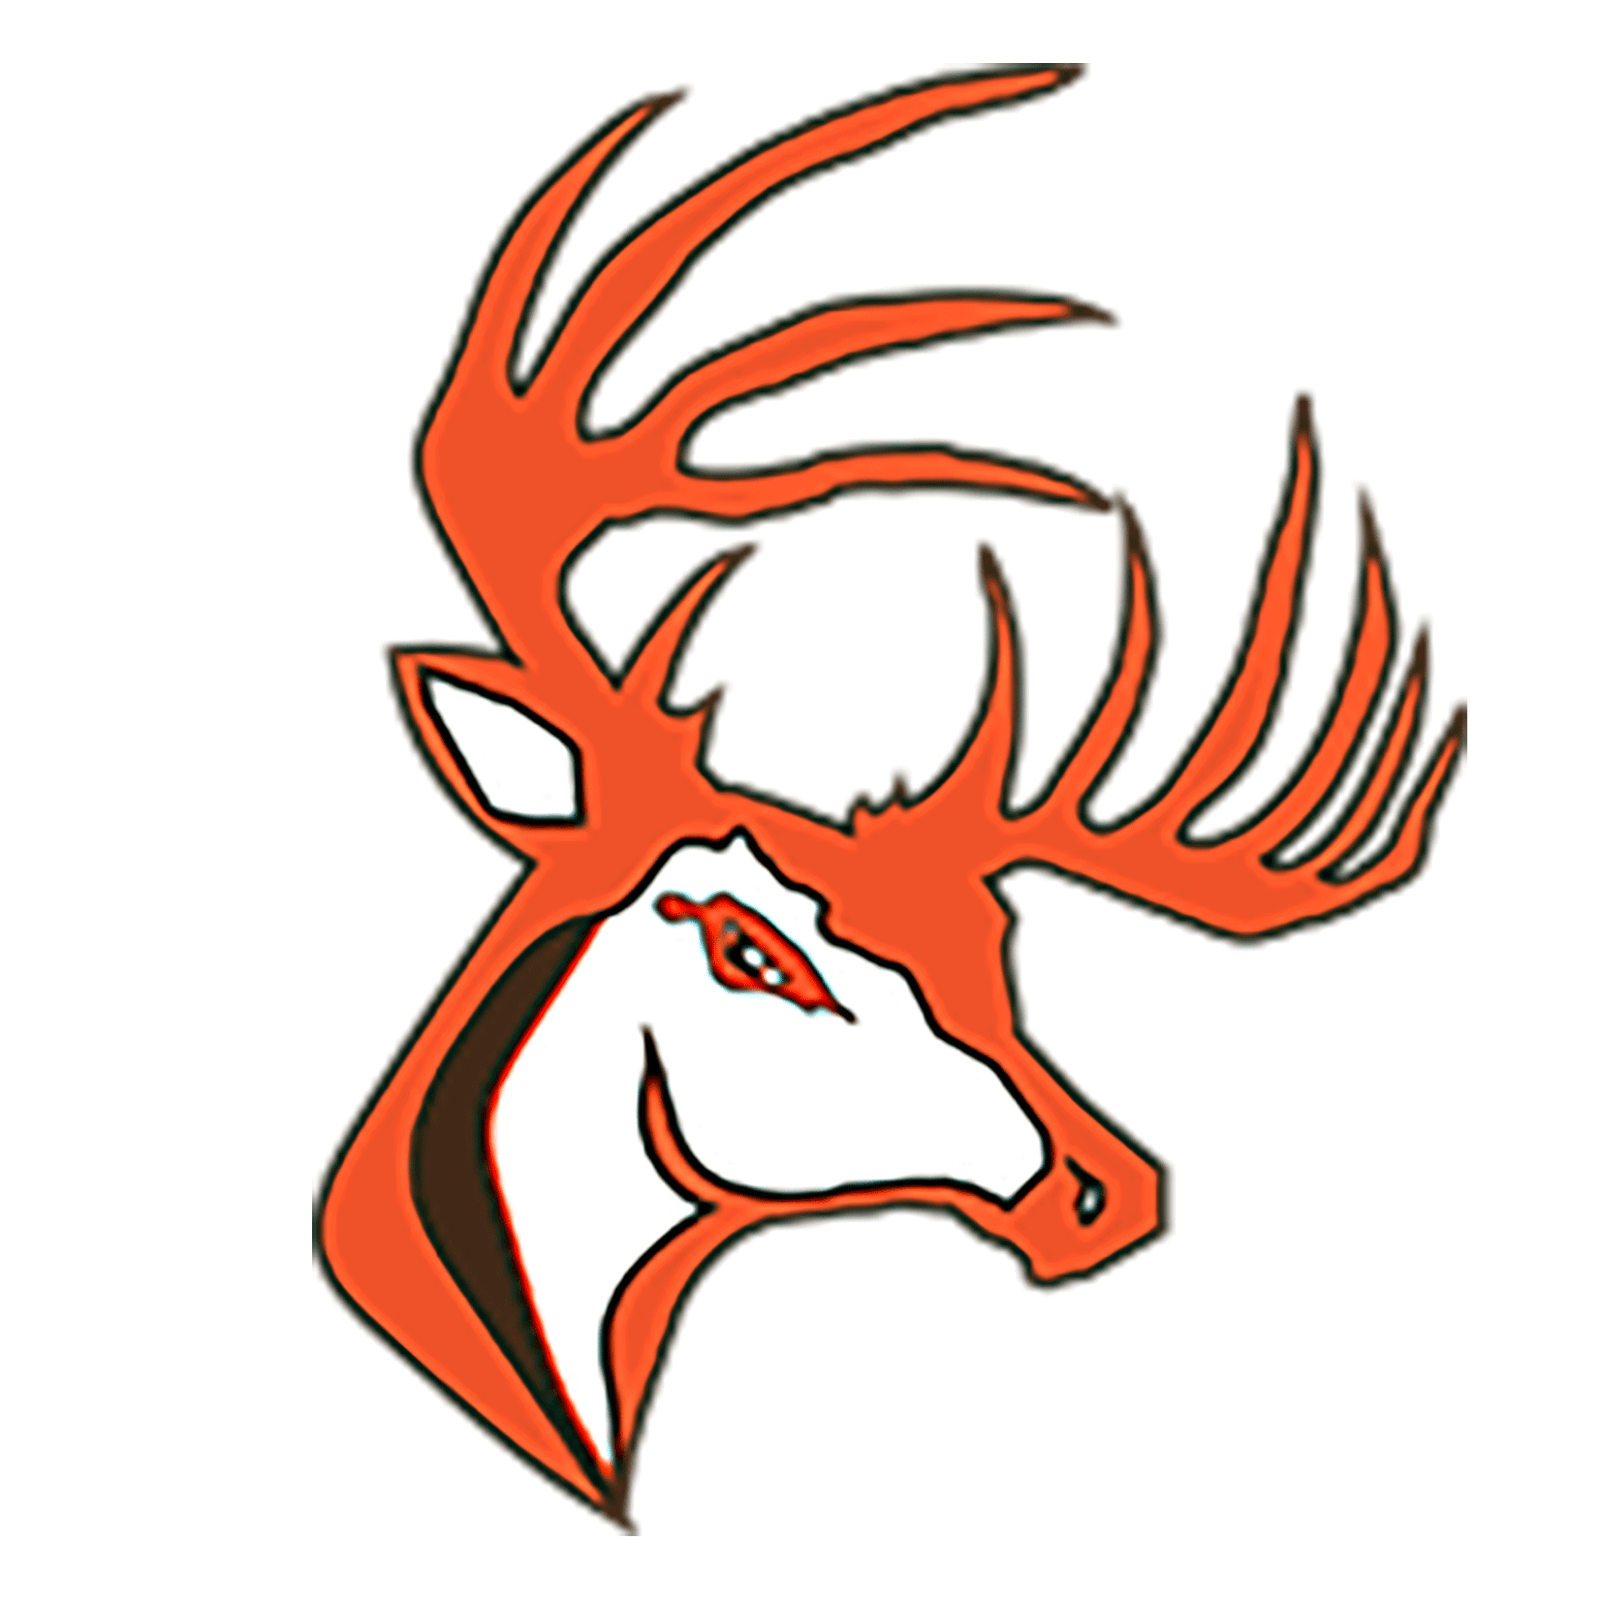 Buckeye Logo - Buckeye - Team Home Buckeye Bucks Sports